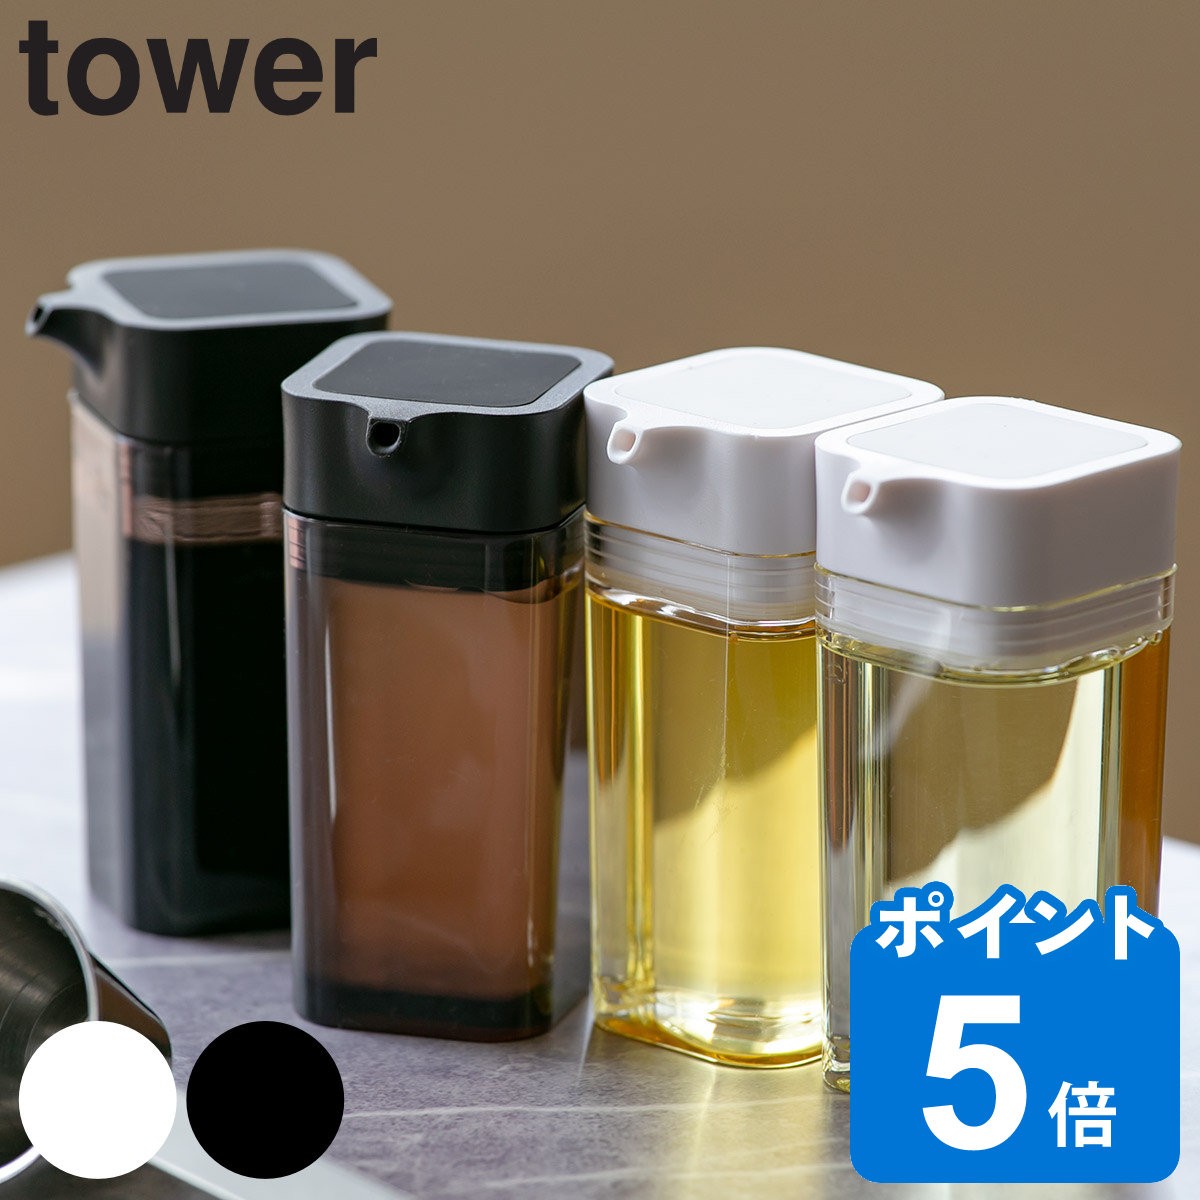 tower vbVݖ ^[